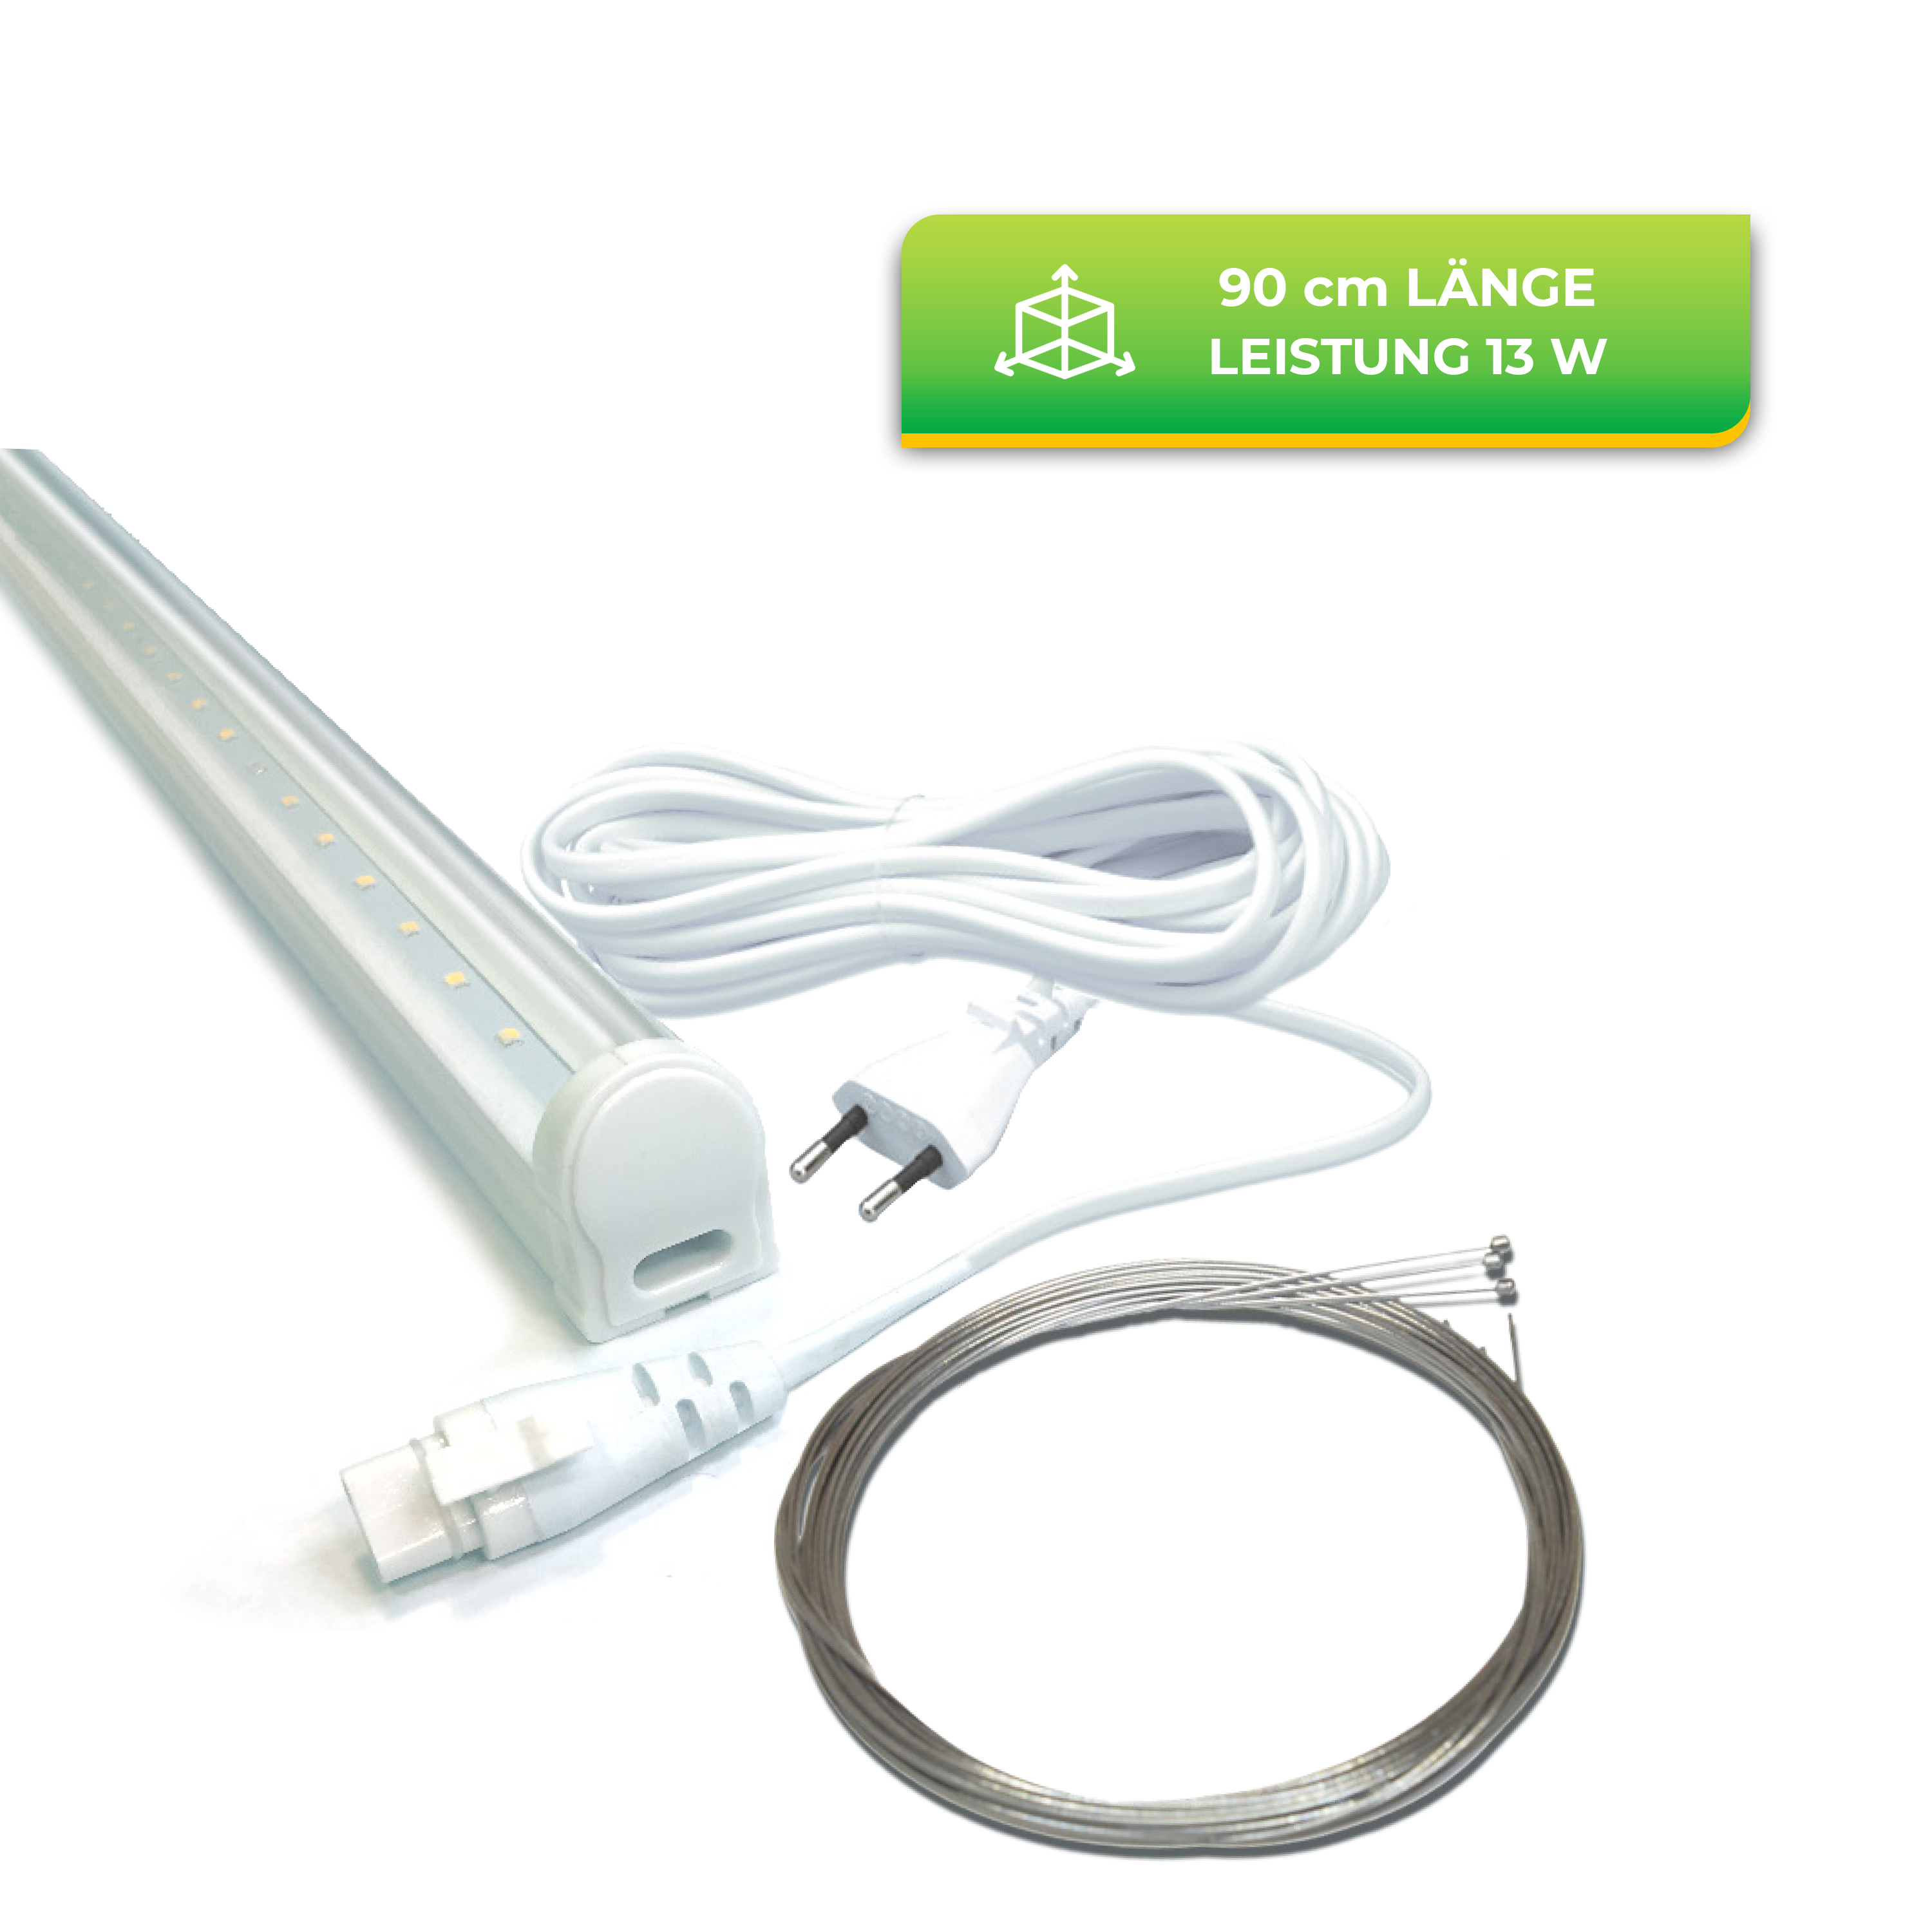 LED-Lichtleiste "FLORABOOSTER 200" - 90 cm | Leistung: 13 W